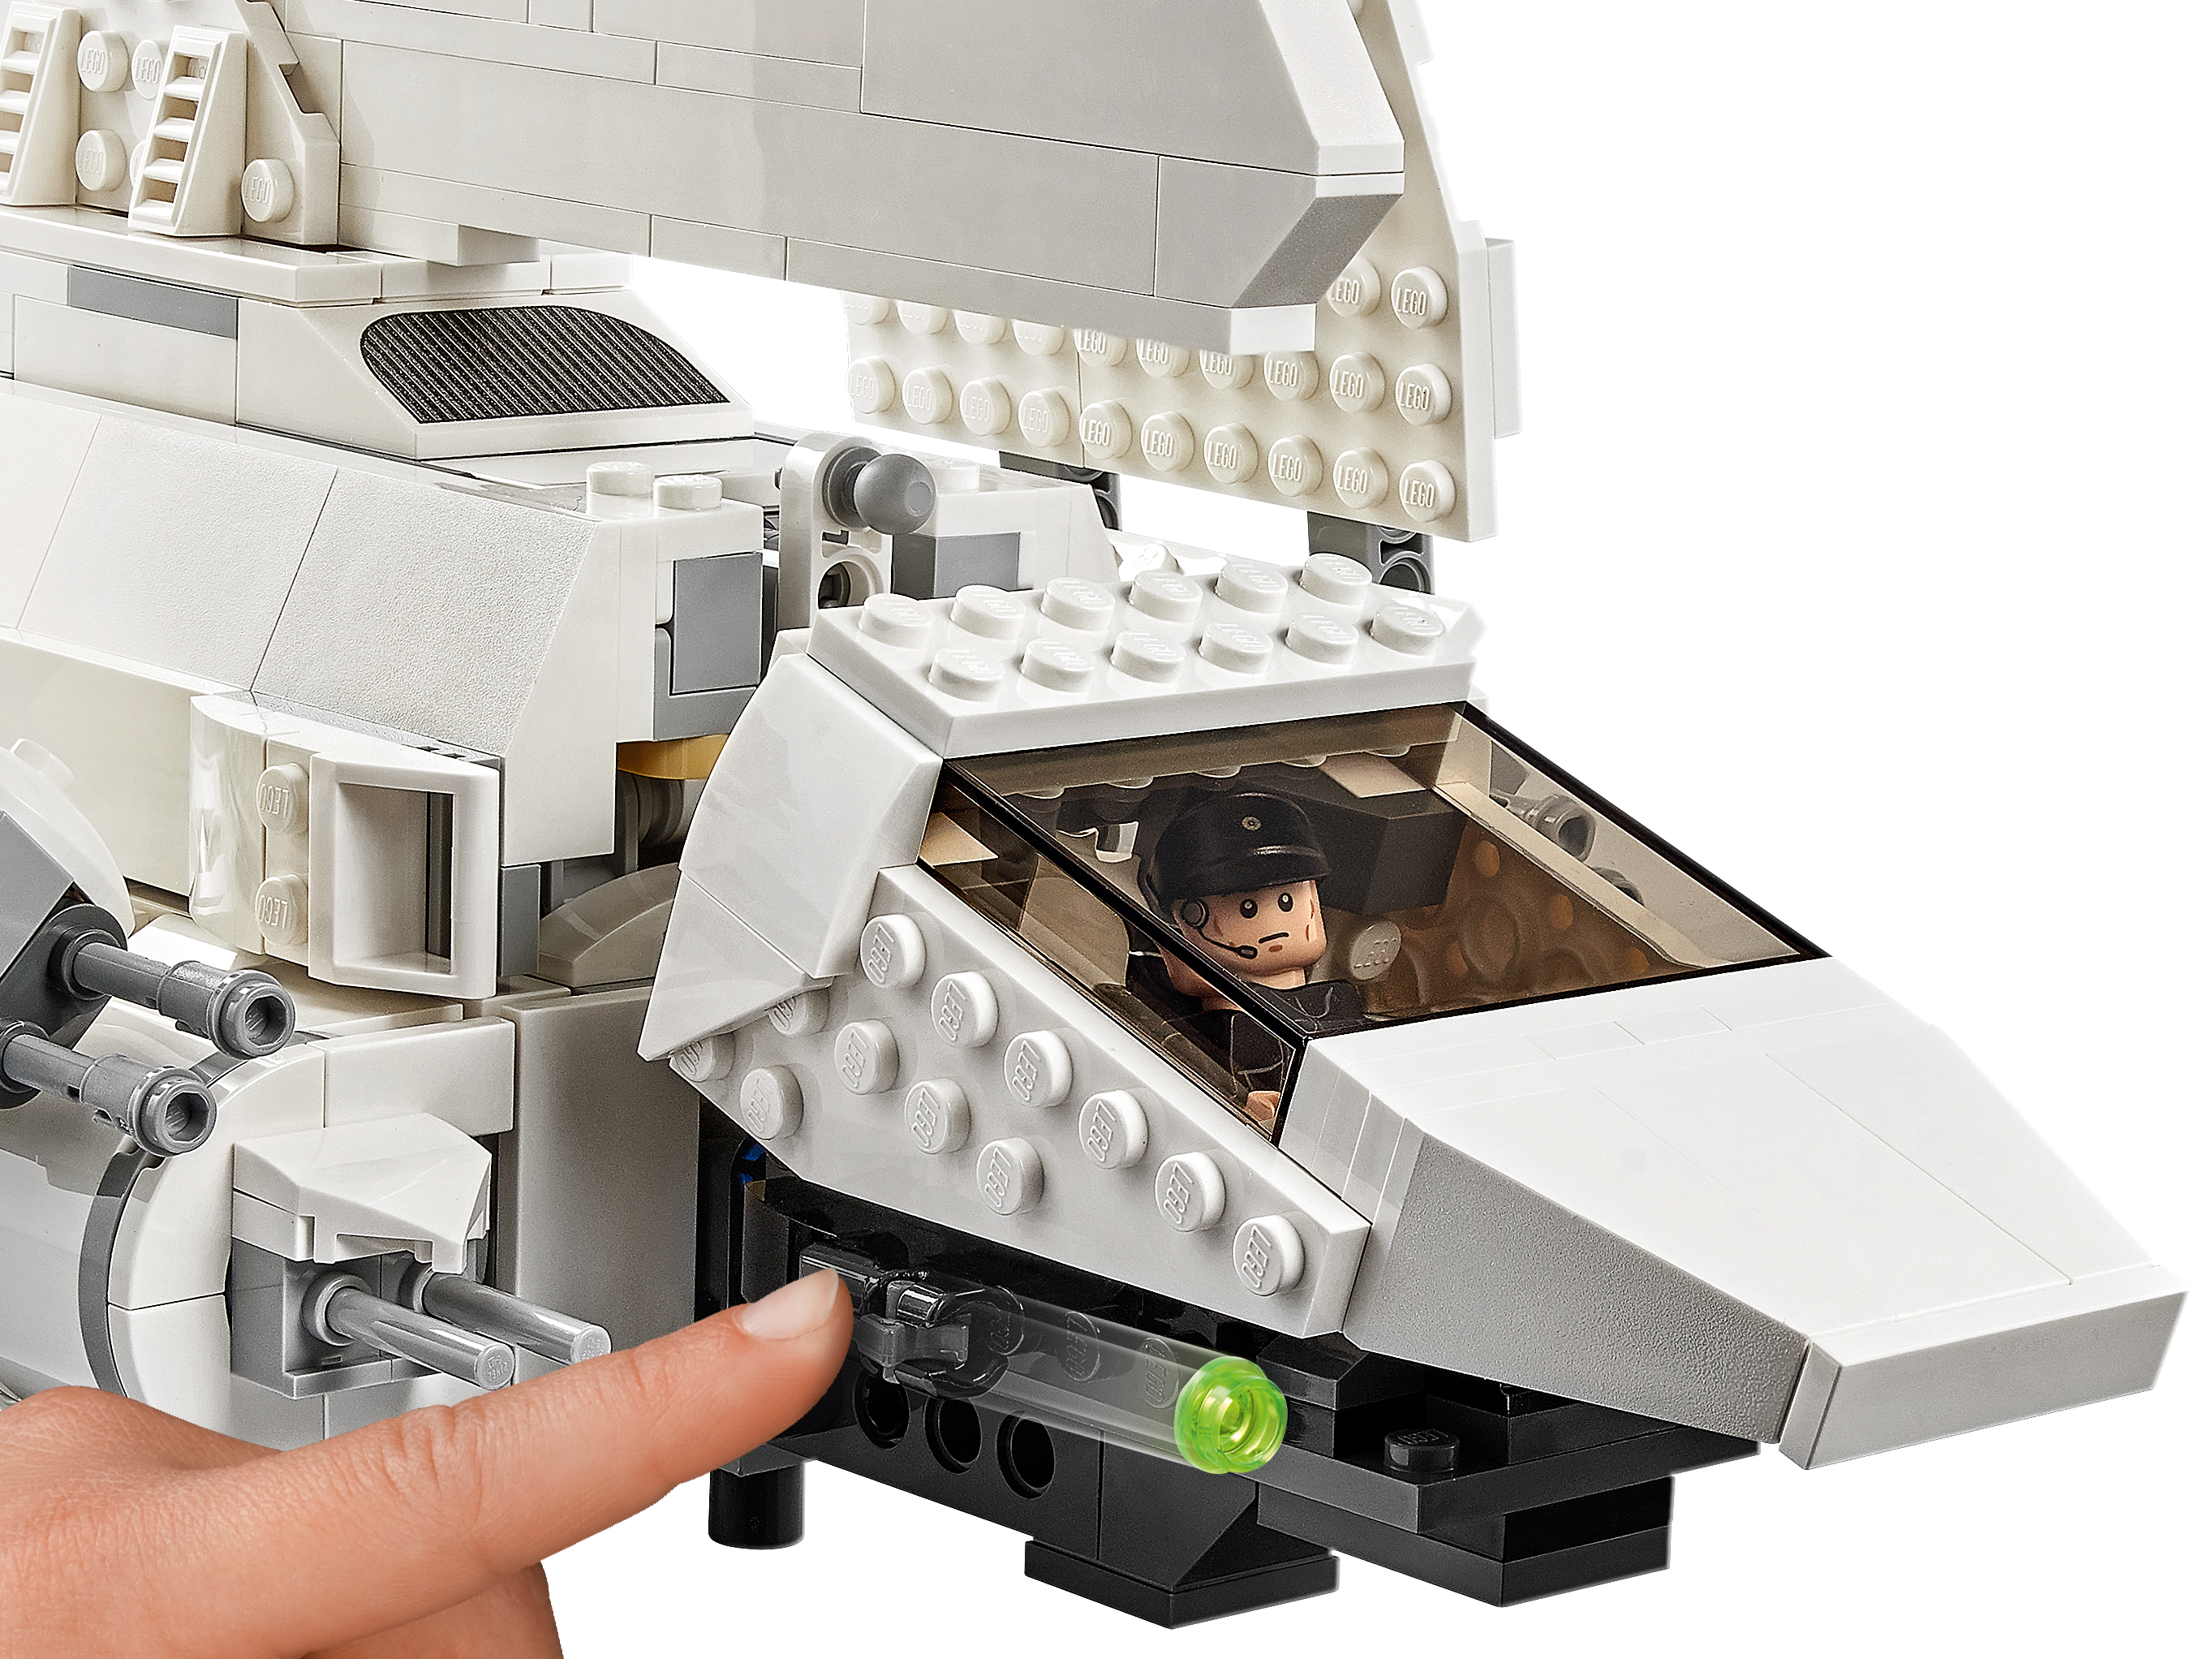 LEGO 75302 Star Wars La Navette impériale Jeu de Construction Minifigurines de Luke Skywalker avec Son Sabre Laser et Dark Vador